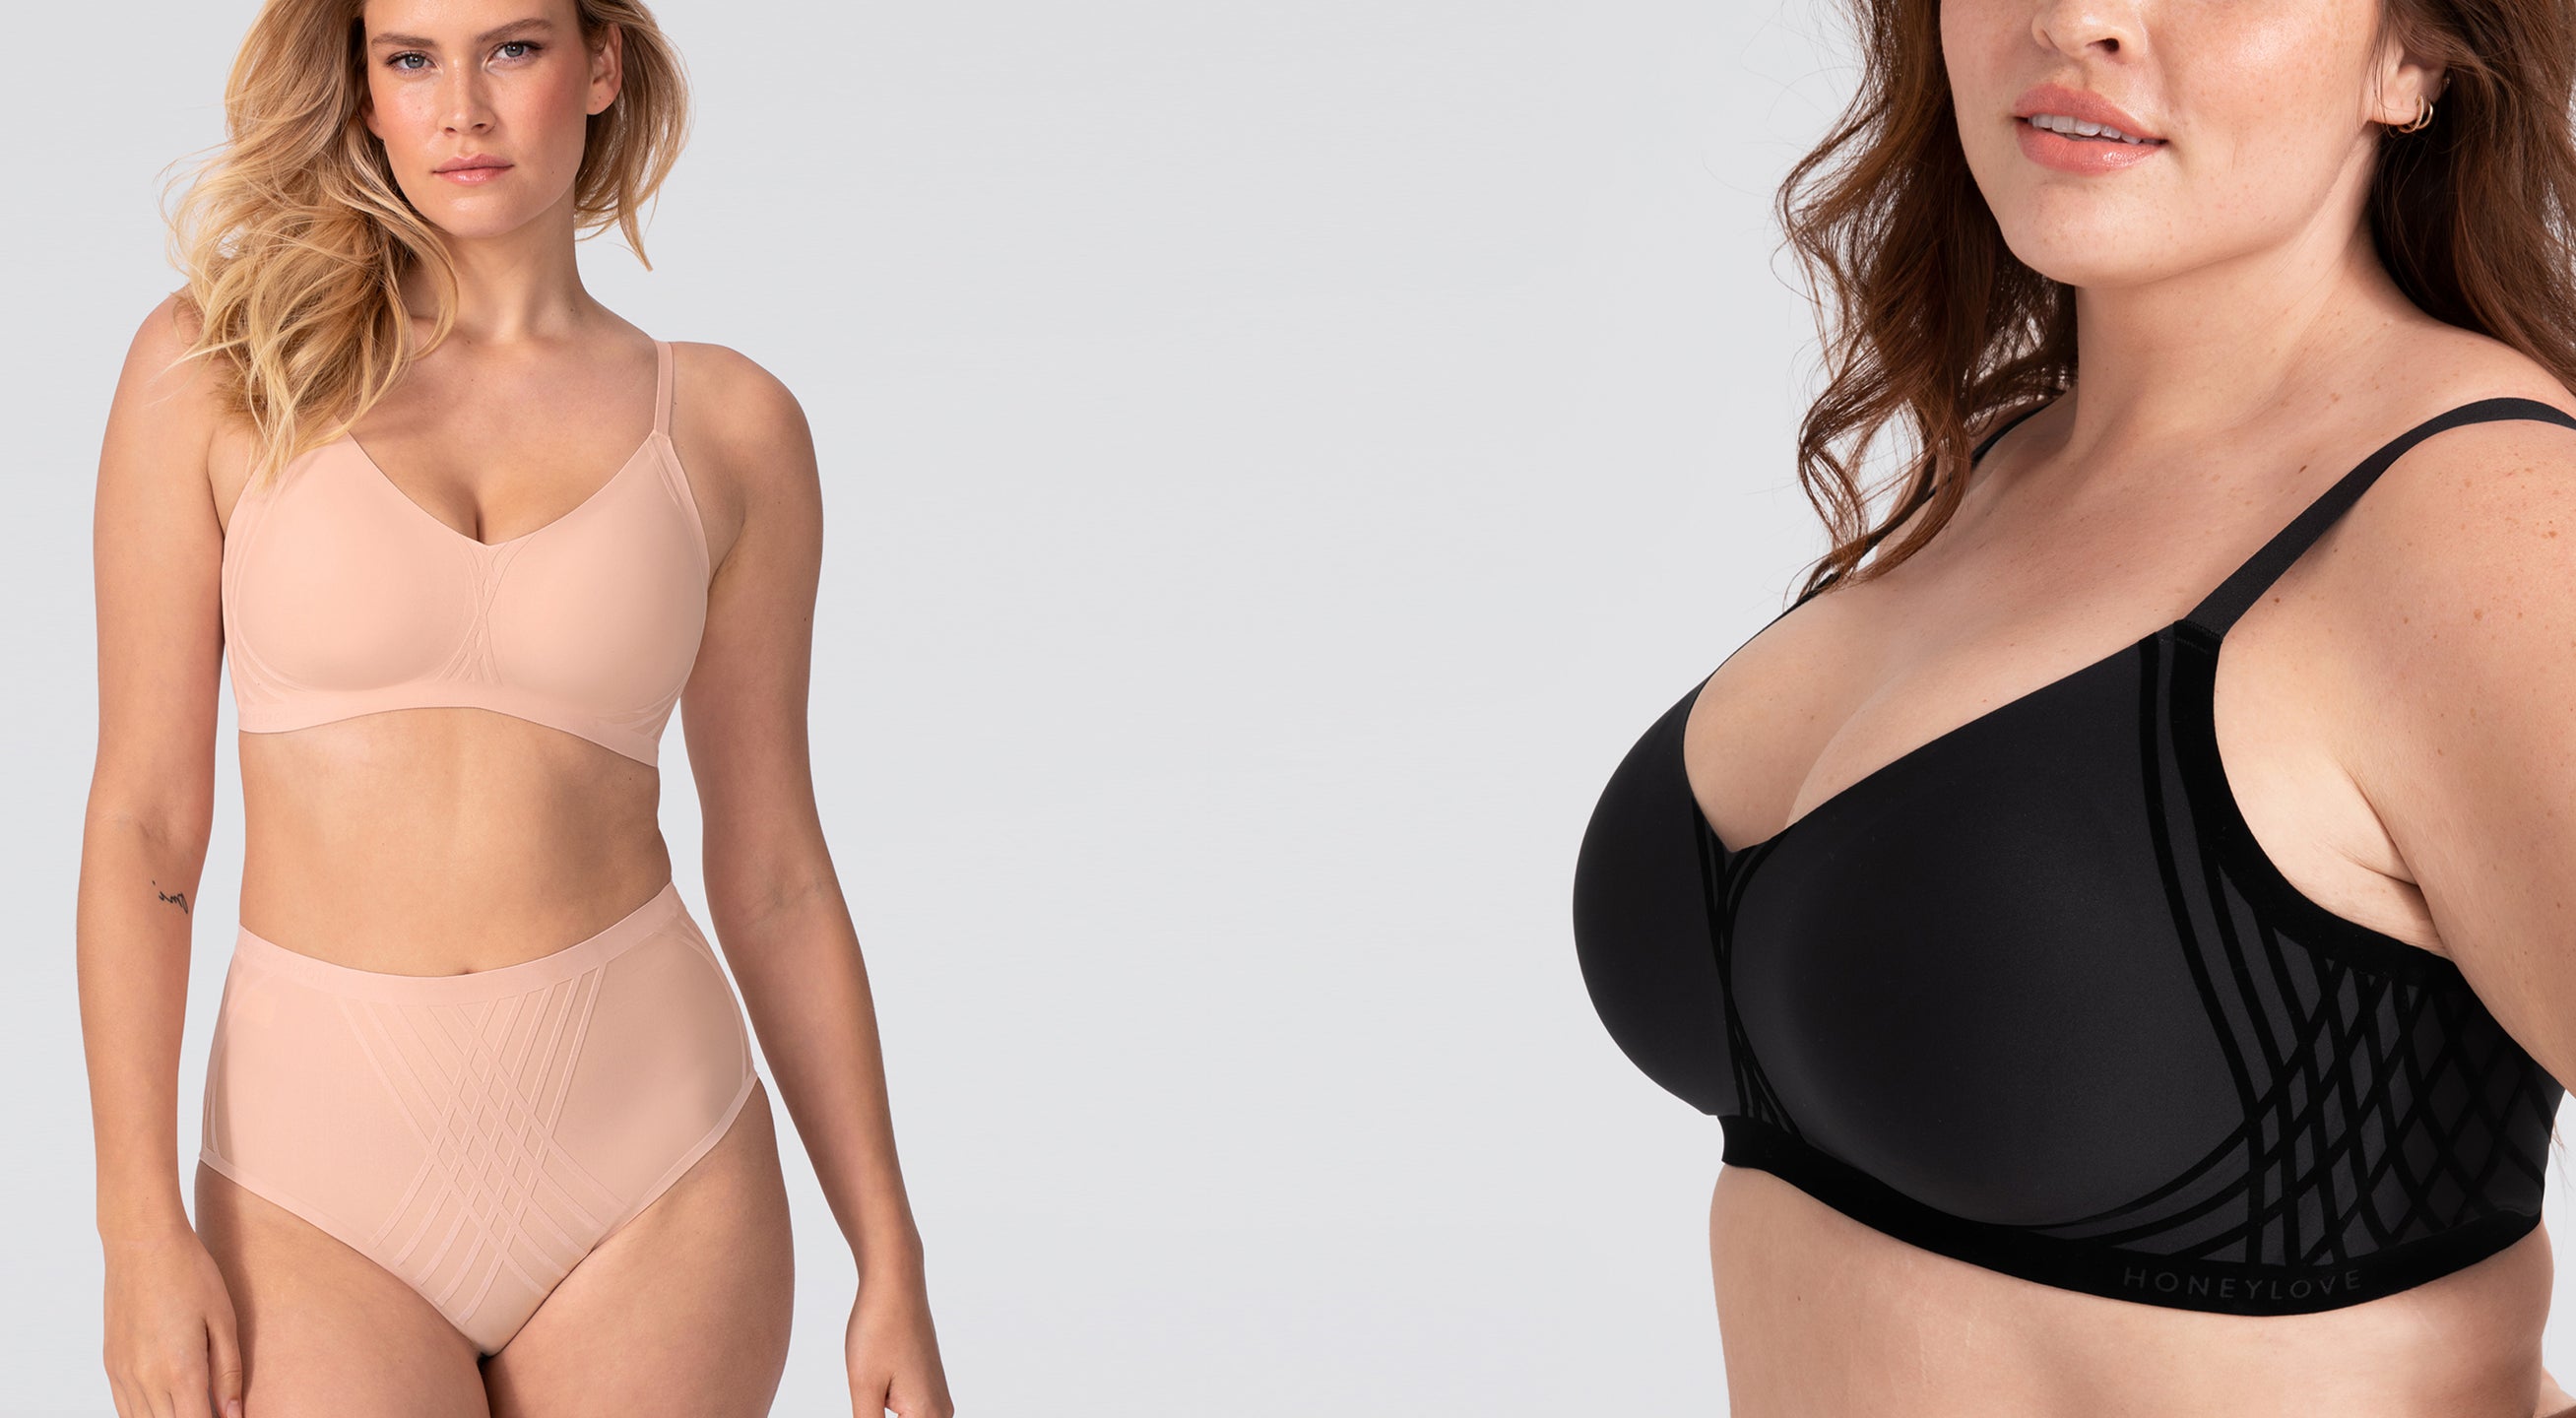 Honeylove Blog: Flex size bras for changing bodies